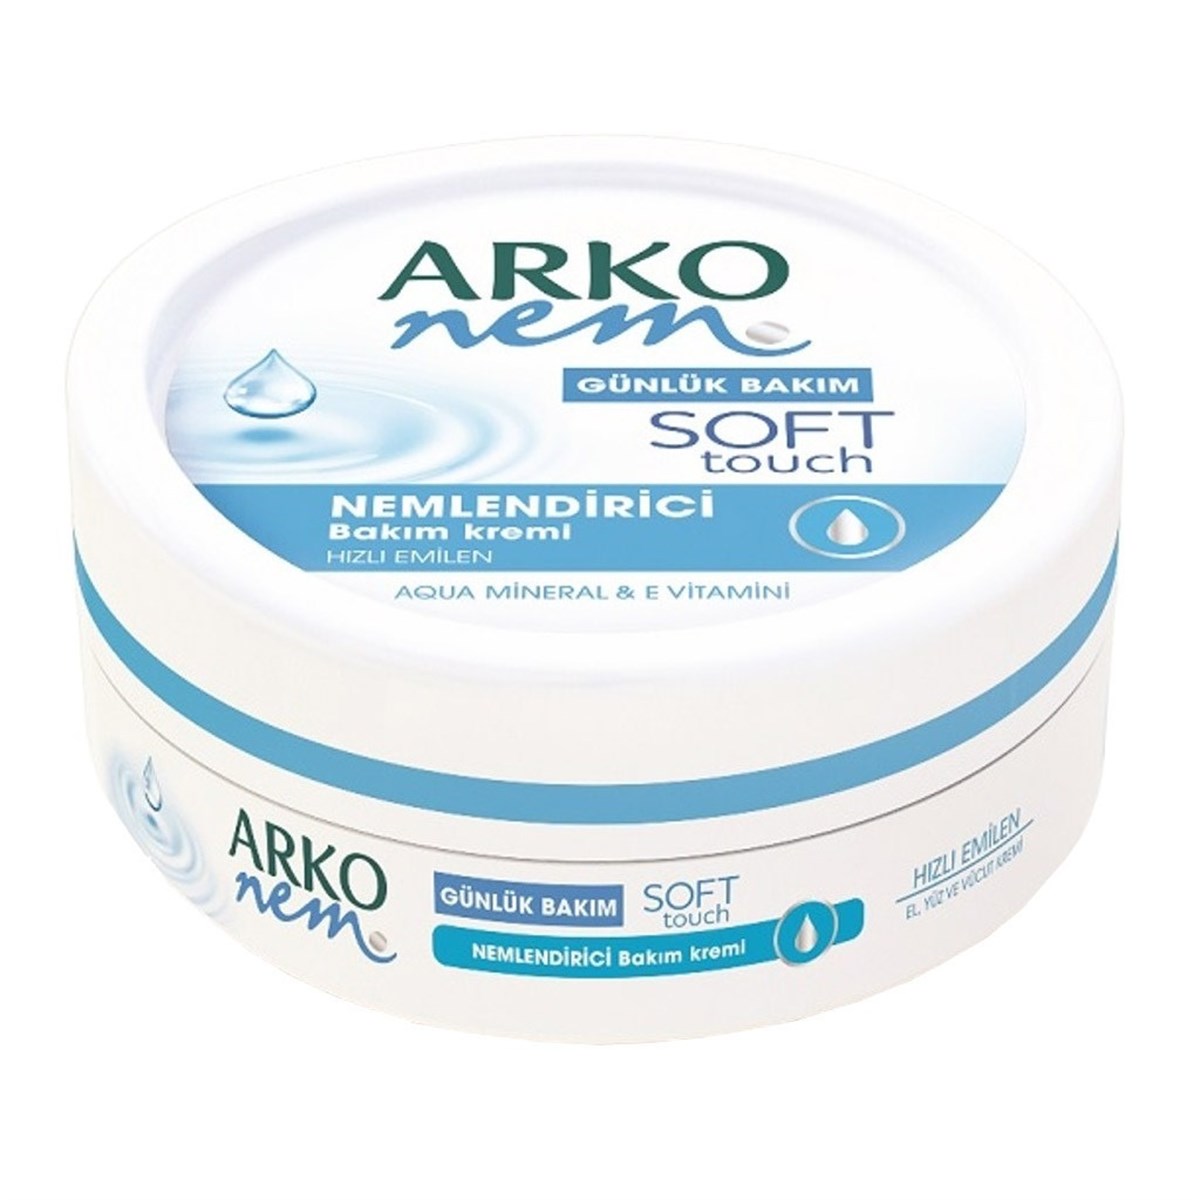 Arko Soft Touch Nemlendirici Bakım Kremi 100 ml